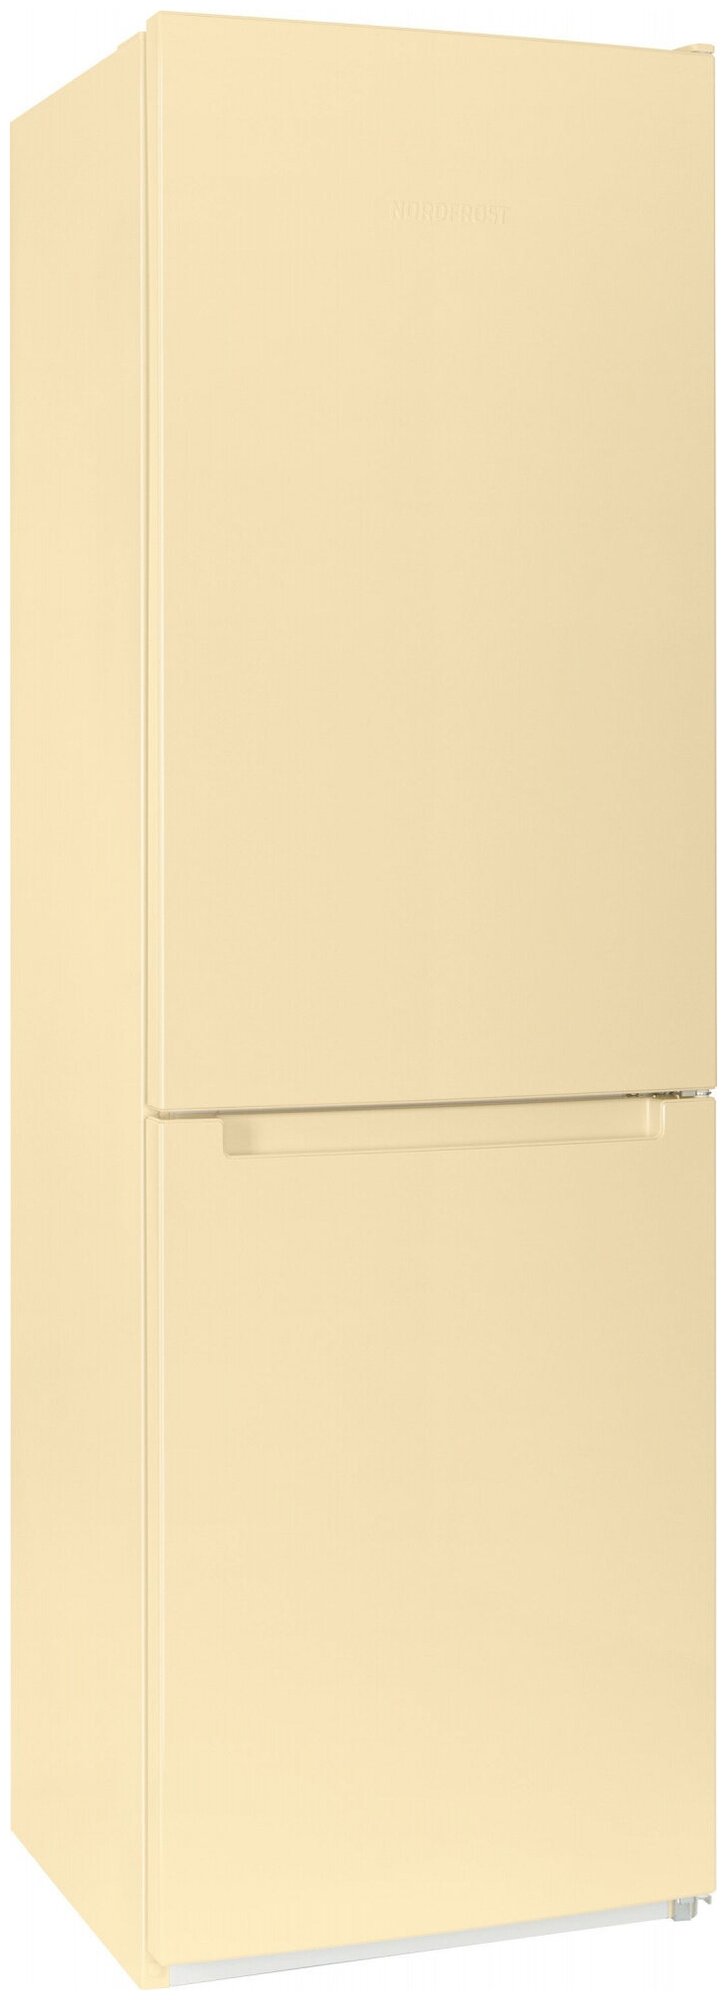 Холодильник Nordfrost NRB 152 E - фото №1